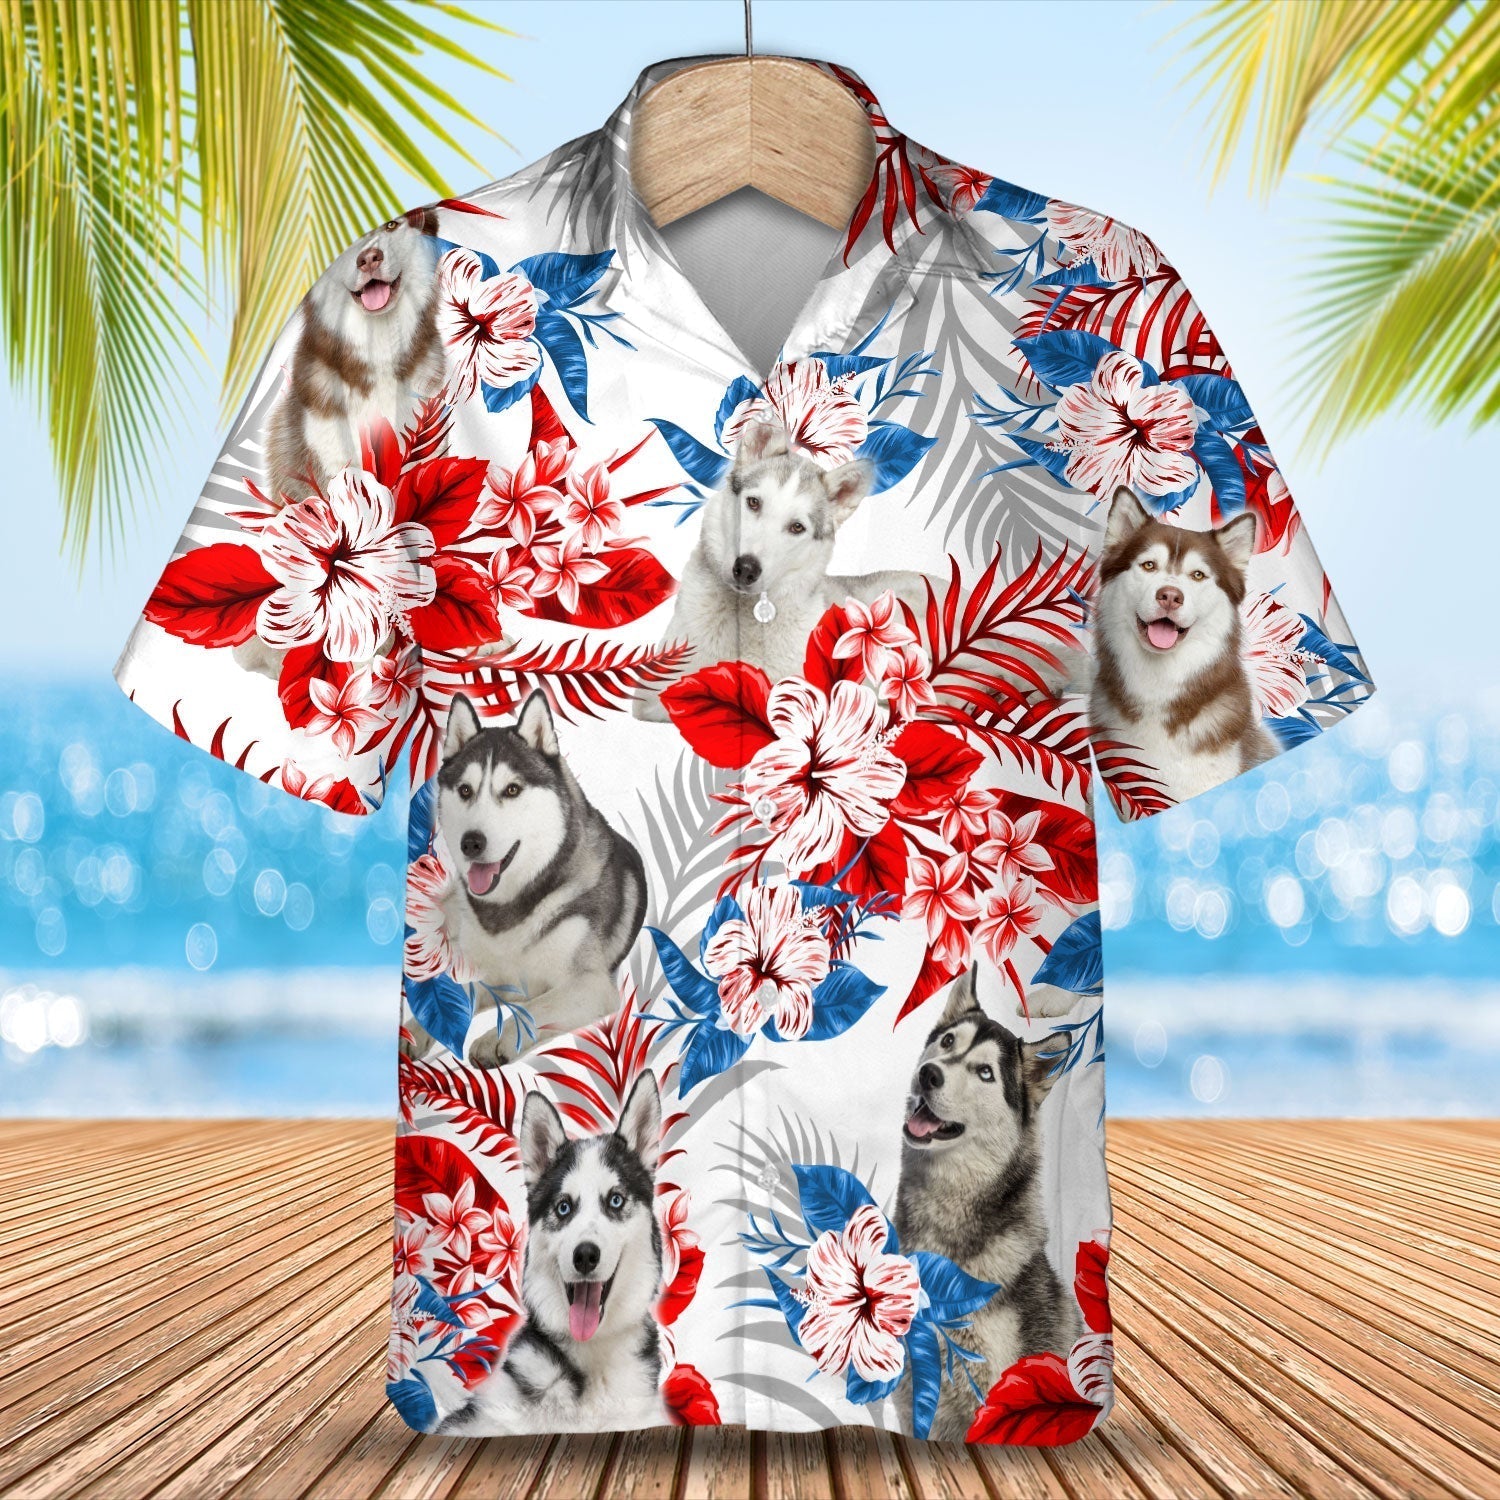 Husky Hawaiian Shirt - Gift for Summer, Summer aloha shirt, Hawaiian shirt for Men and women